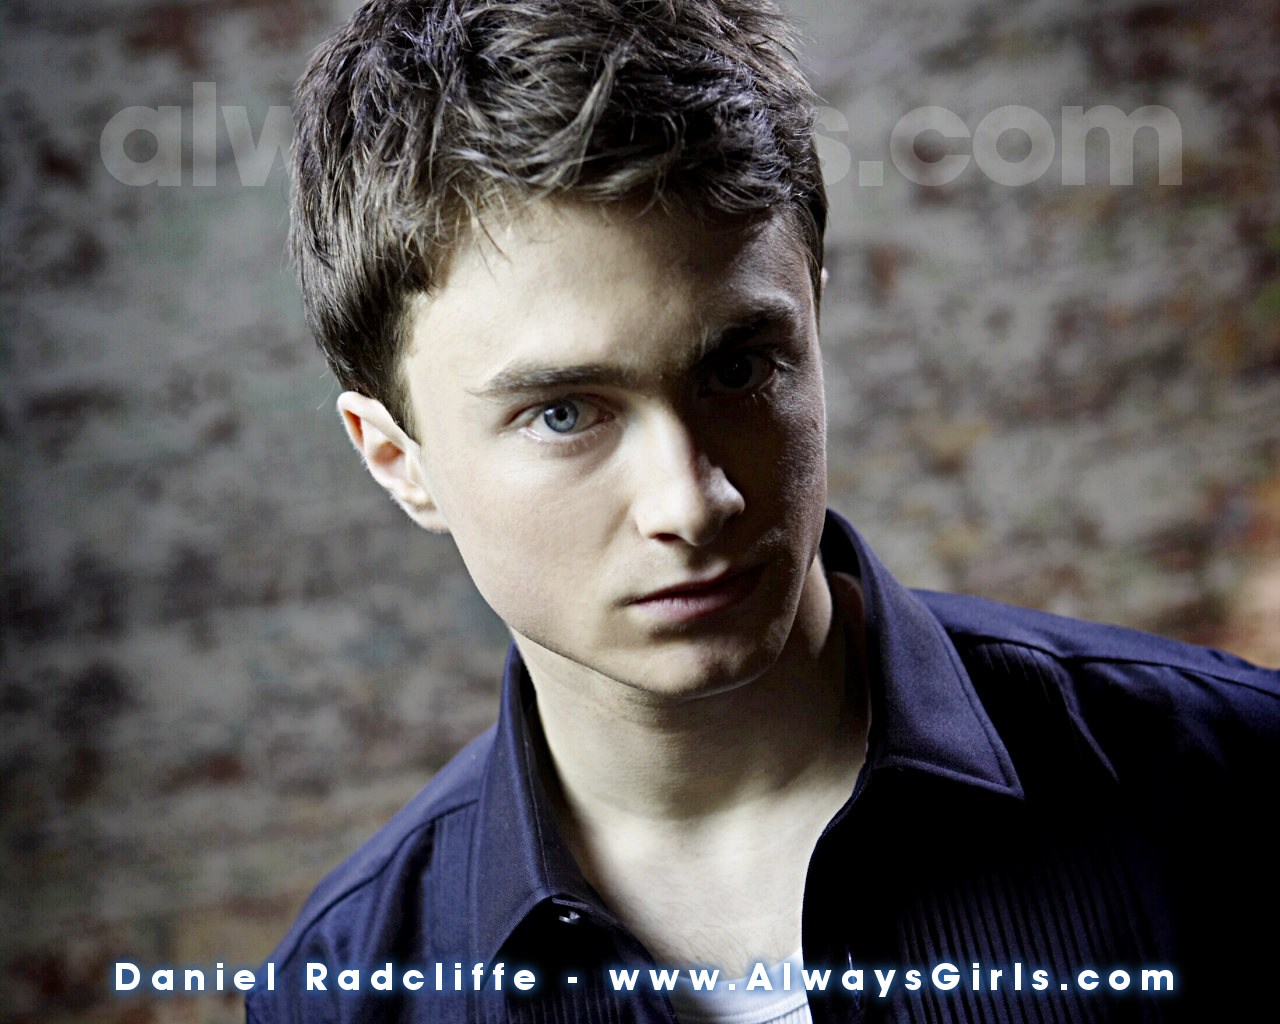 Daniel Radcliffe - Daniel Radcliffe Wallpaper (24258894) - Fanpop